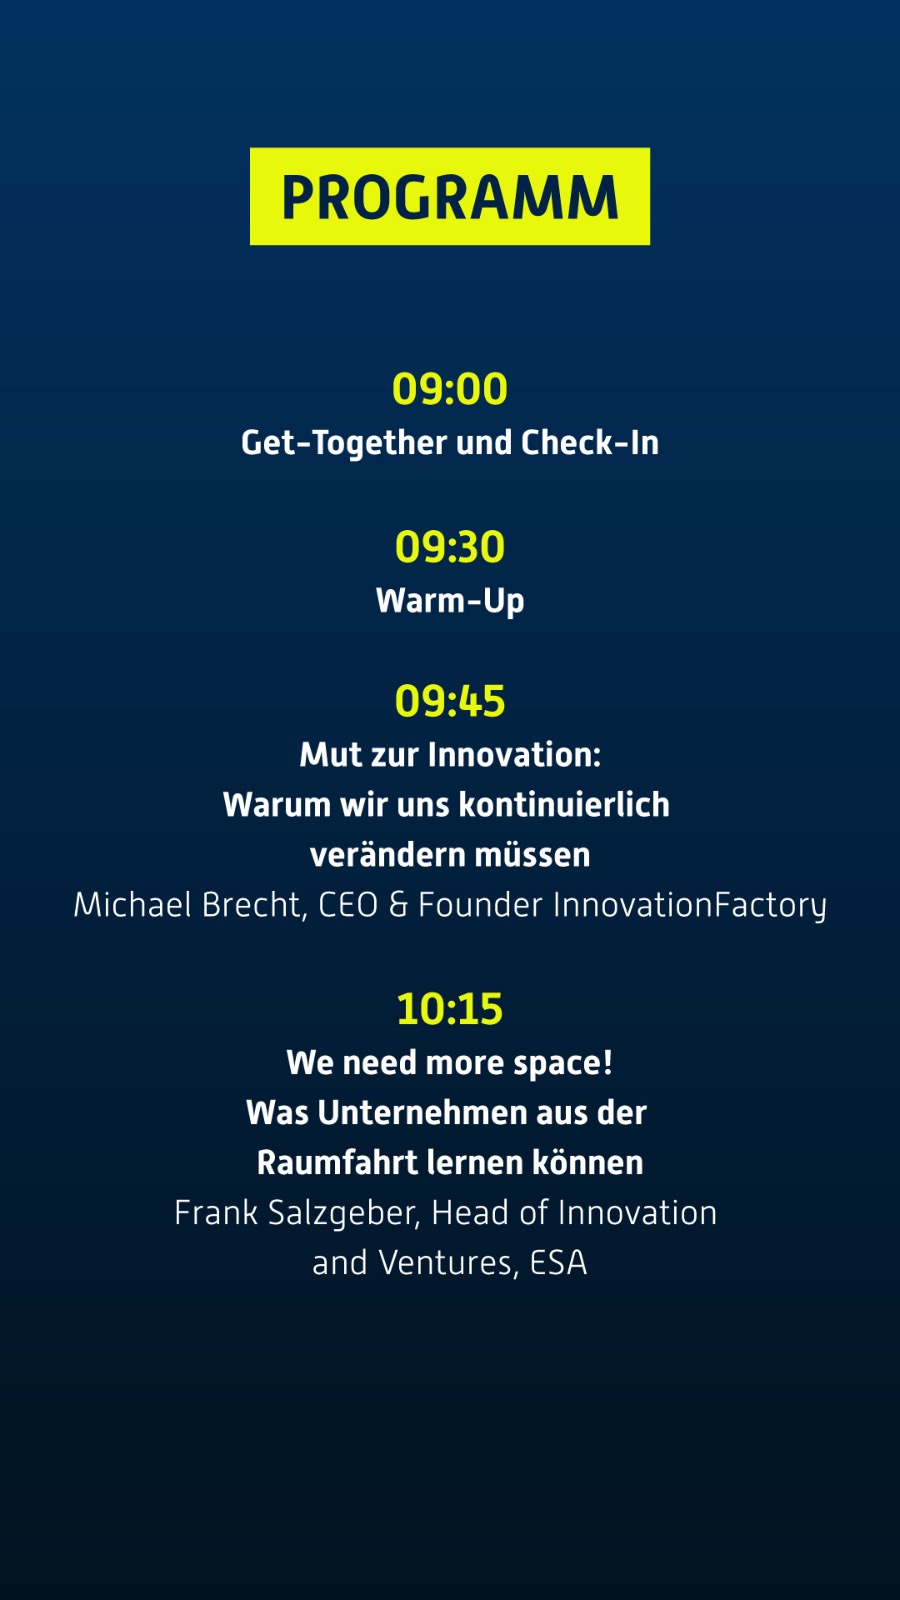 Programm Rocketeer Festival Augsburg - Innovationen und Zukunftstrends